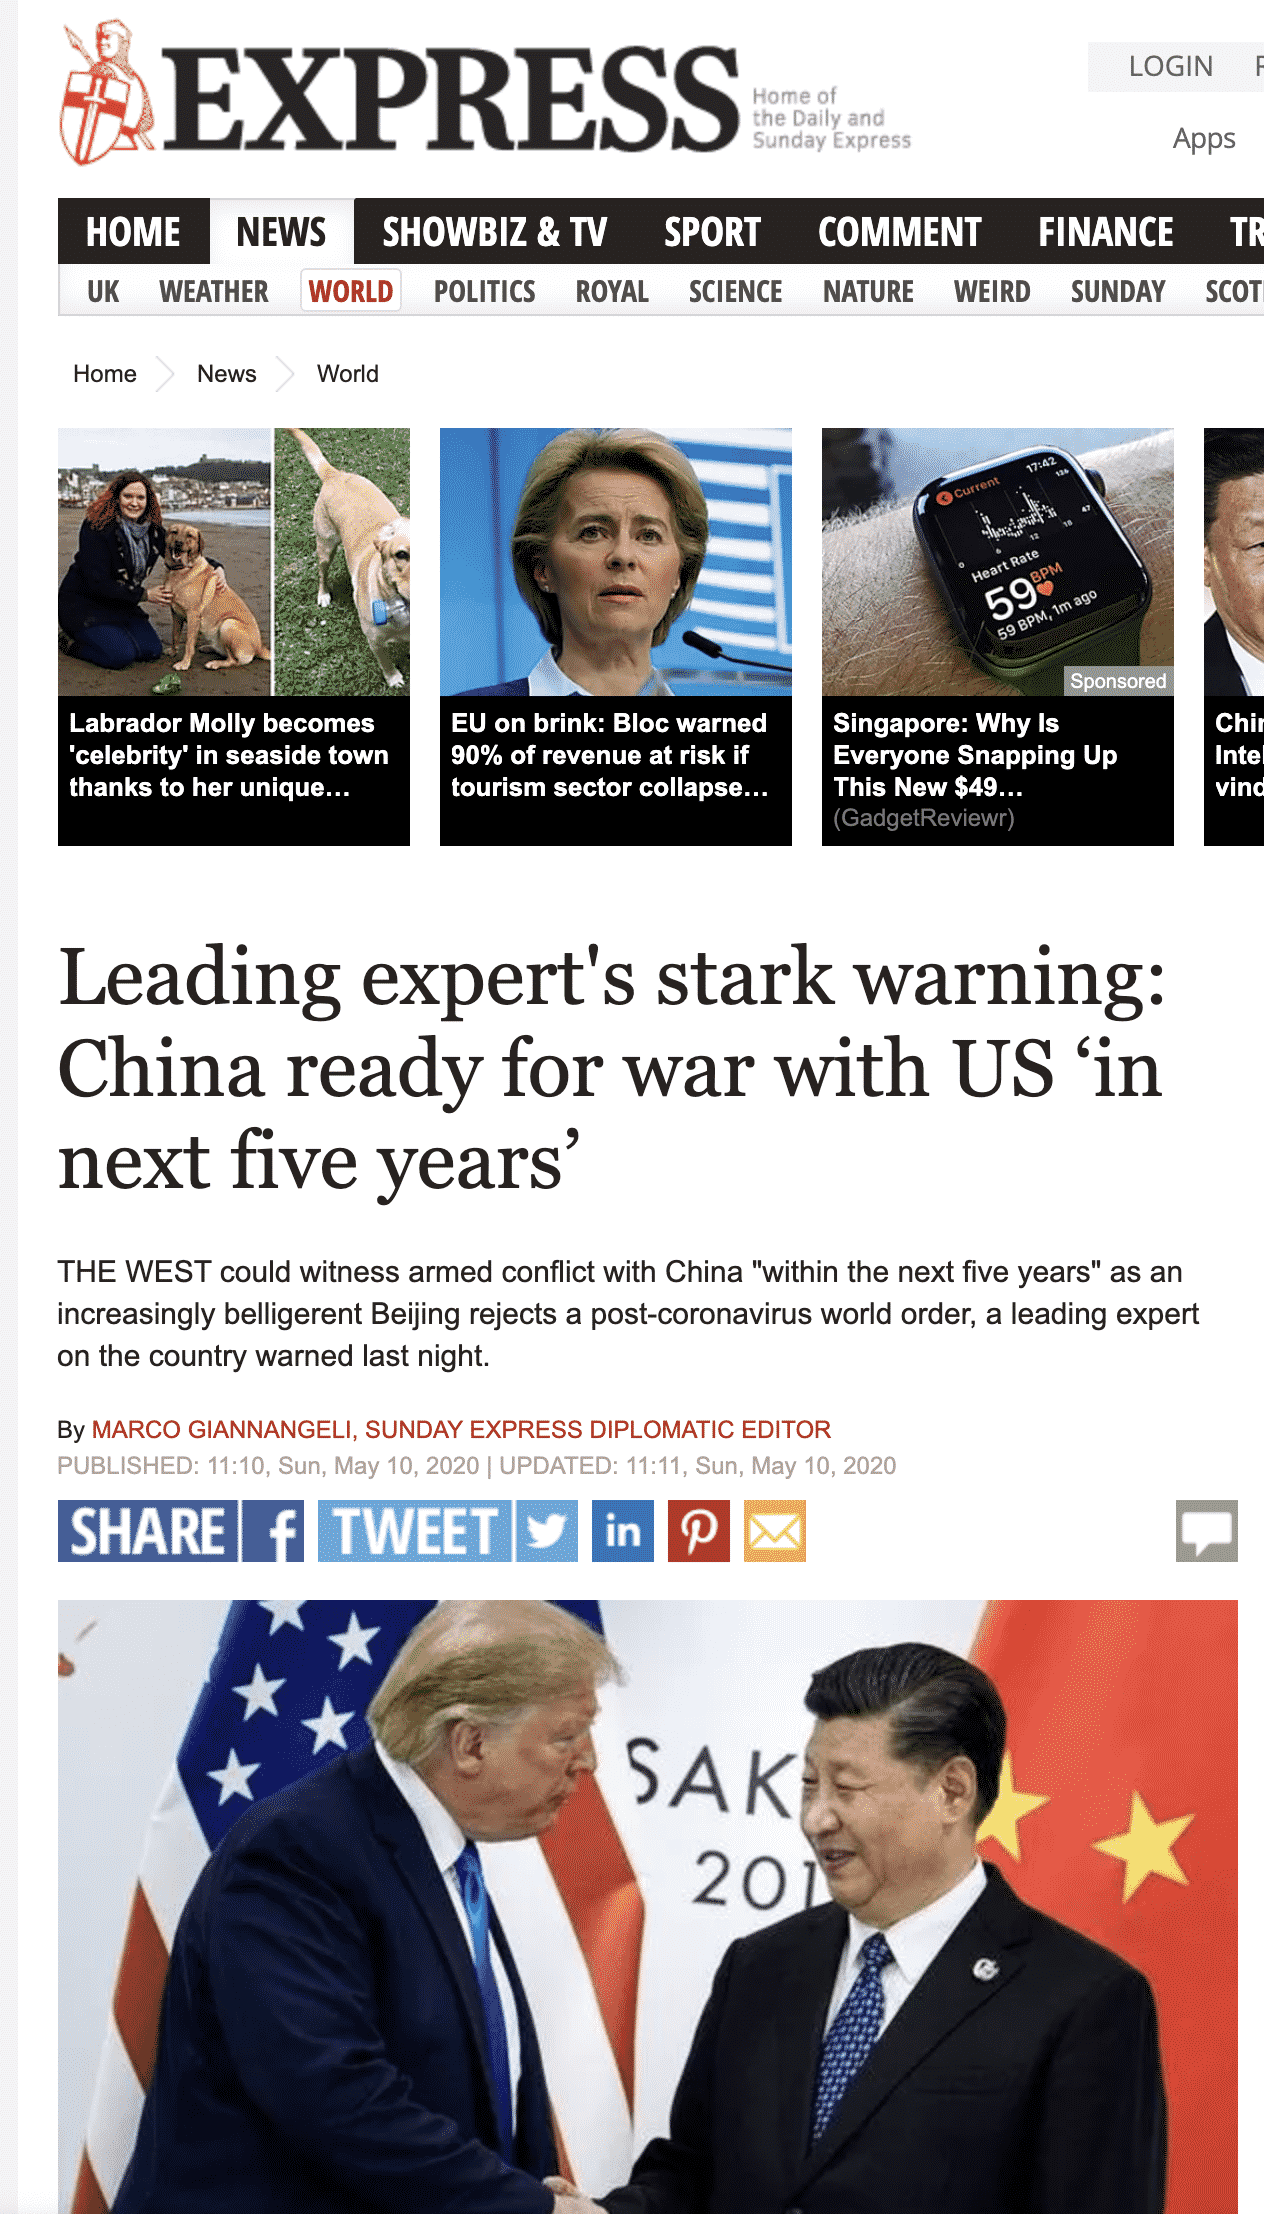 “Chuyên gia cảnh báo: Trung Quốc chuẩn bị cho 5 năm tới chiến tranh nóng với Mỹ”